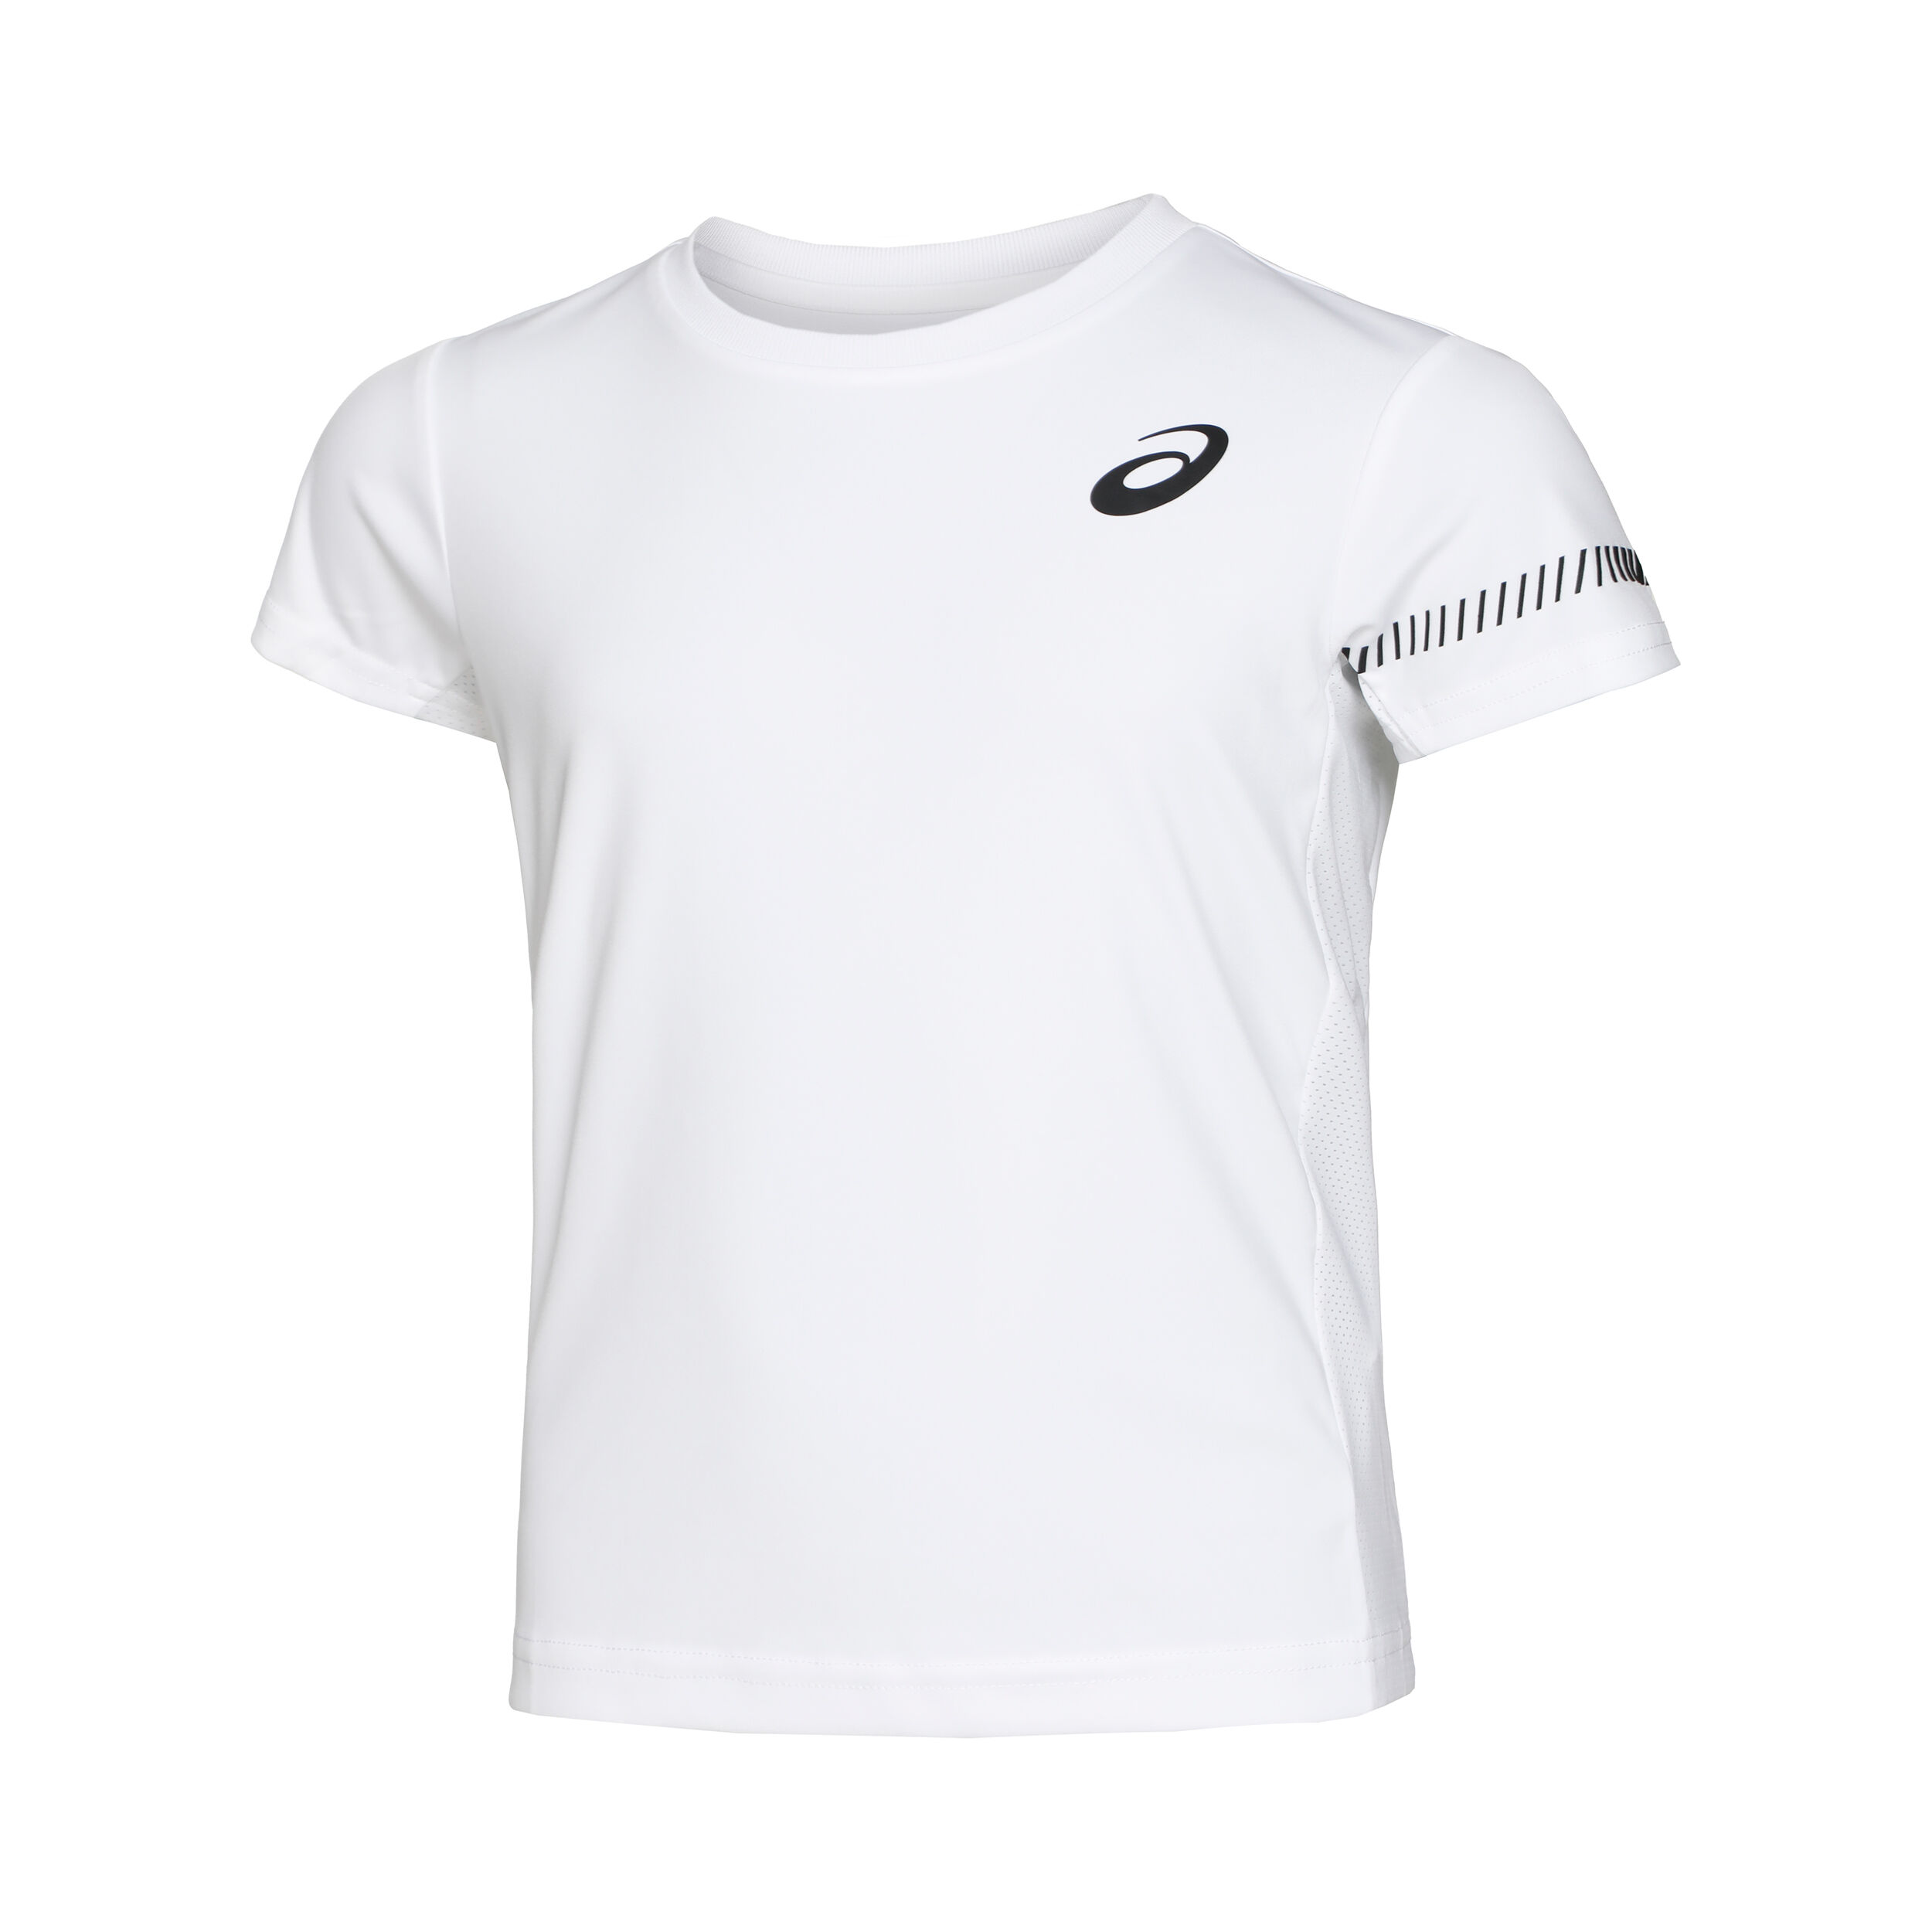 Angebot Dunlop Performance  Damen T-shirt Tennis Gr S Weiß 